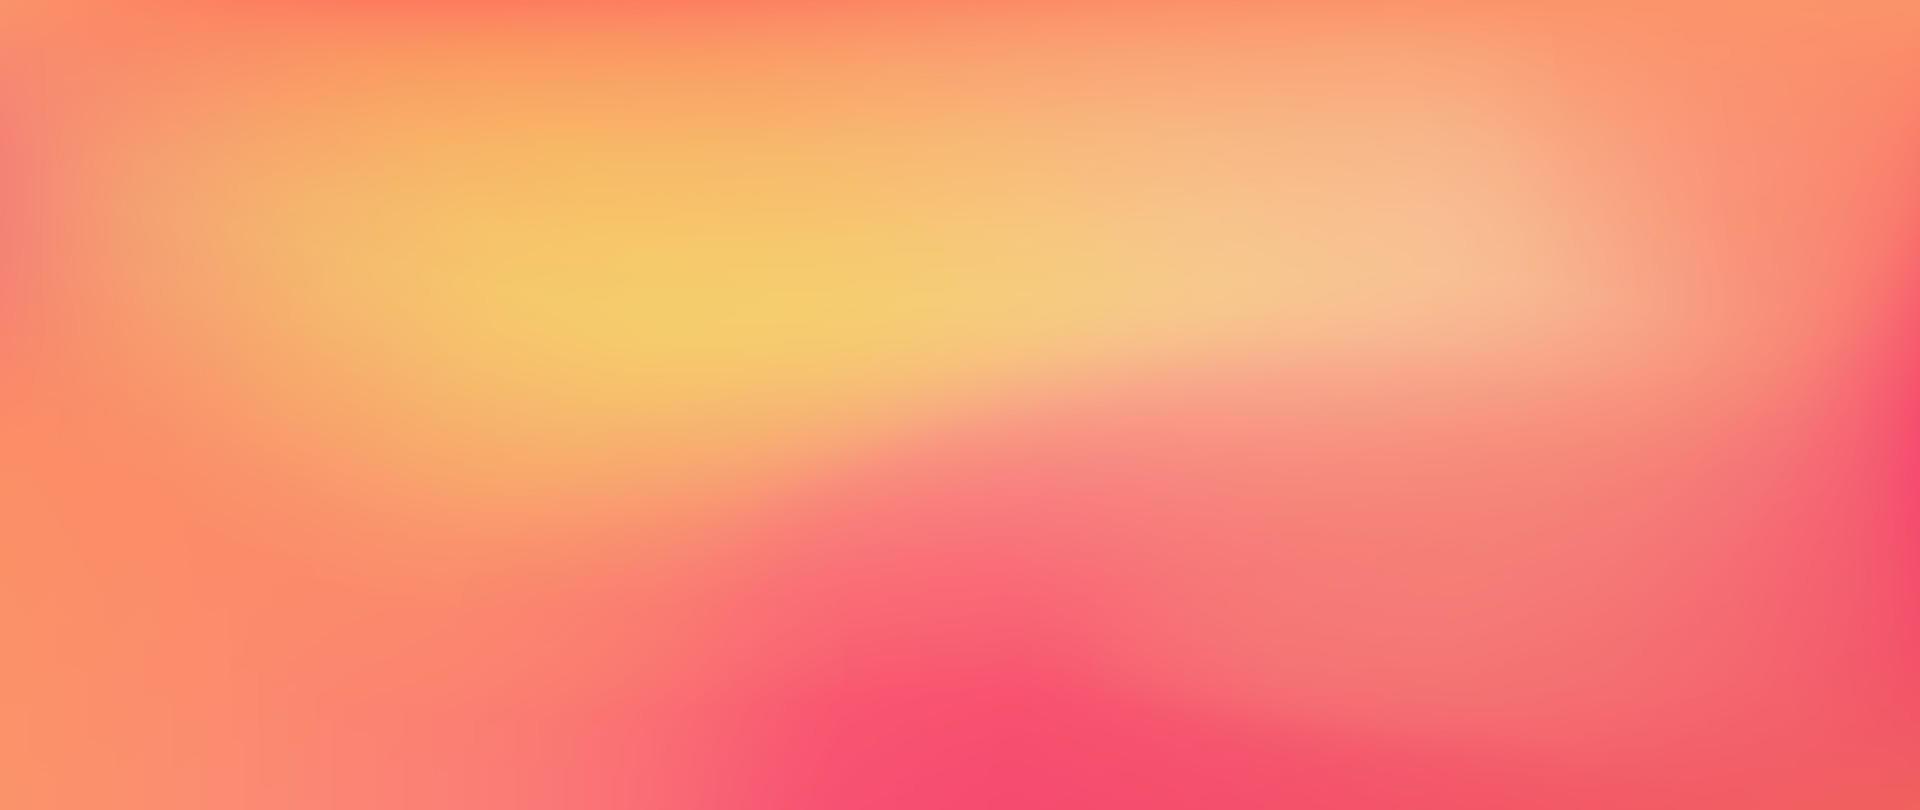 abstrato gradiente desfocar o fundo. bandeira desfocada macia colorida. ilustração em vetor design gráfico de fundo de cor brilhante e suave moderno